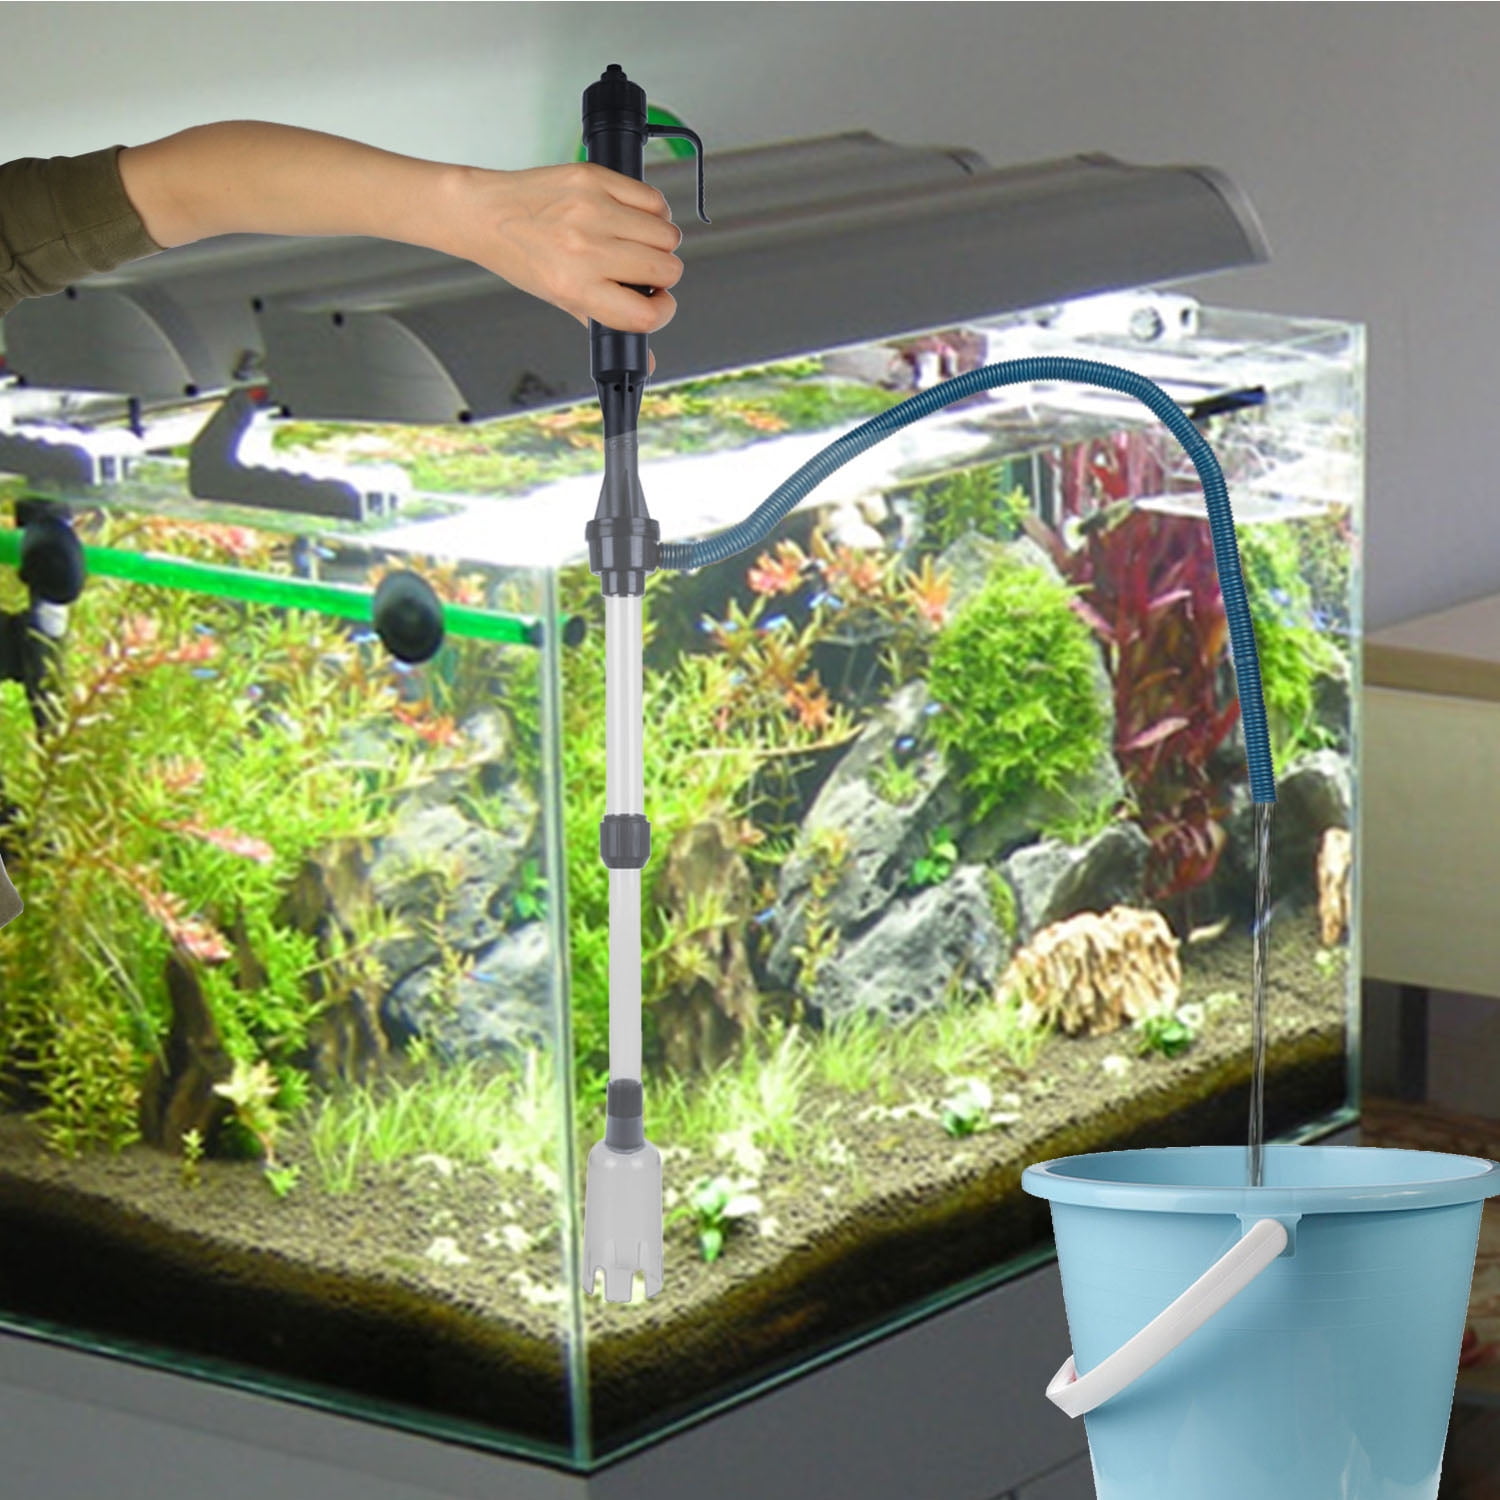 Should You Vacuum Your Aquarium Gravel?